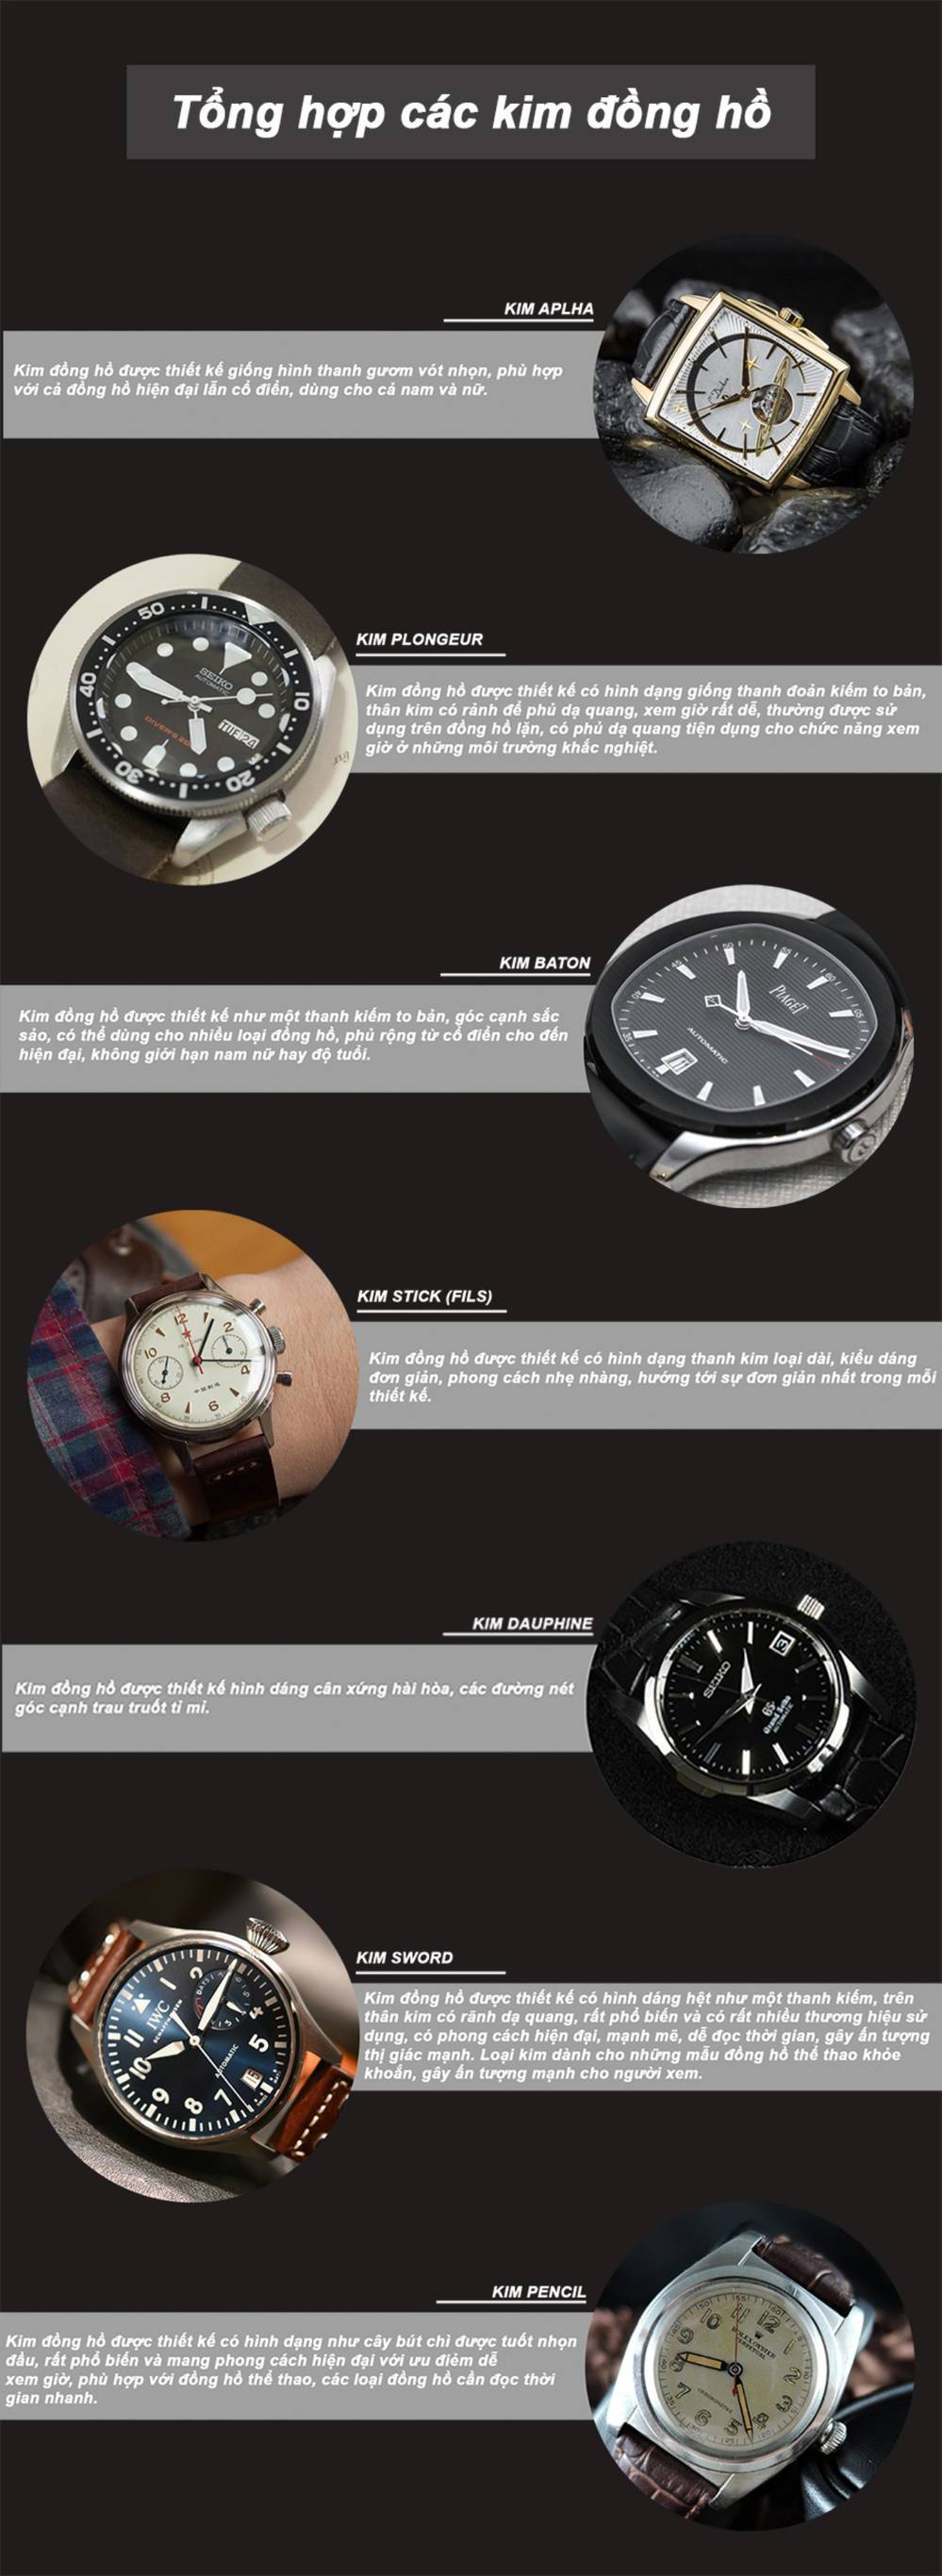 Tổng hợp các loại kim đồng hồ phổ biến nhất